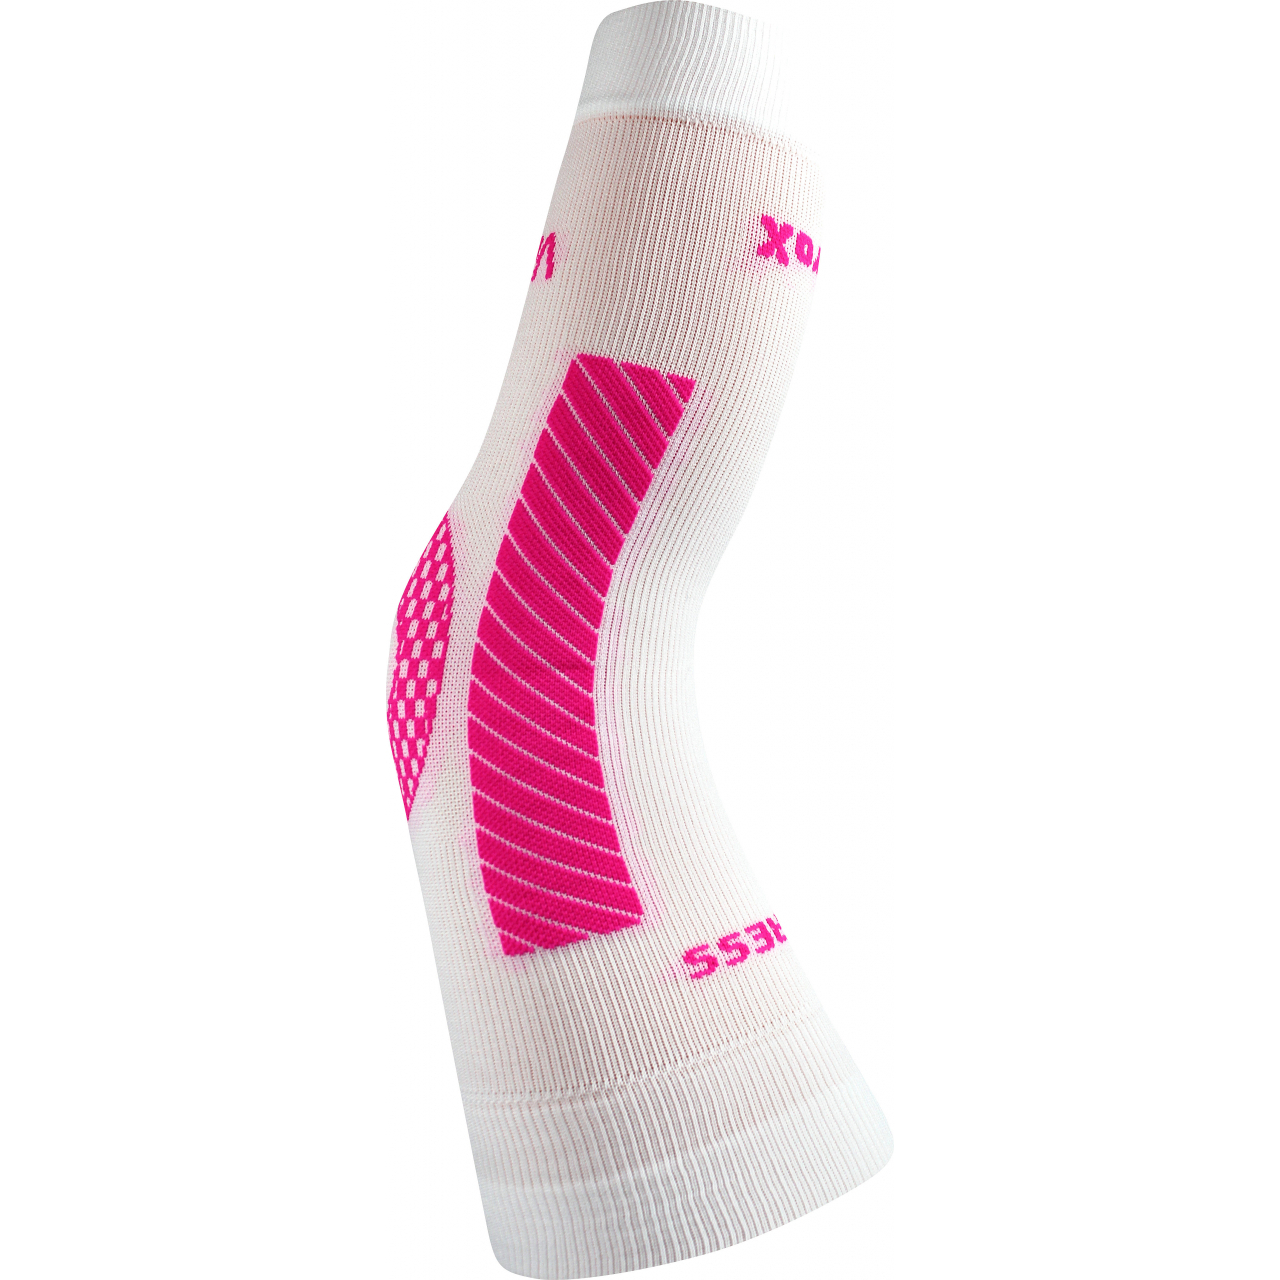 Návlek kompresní Voxx Protect koleno - bílý-růžový, S/M